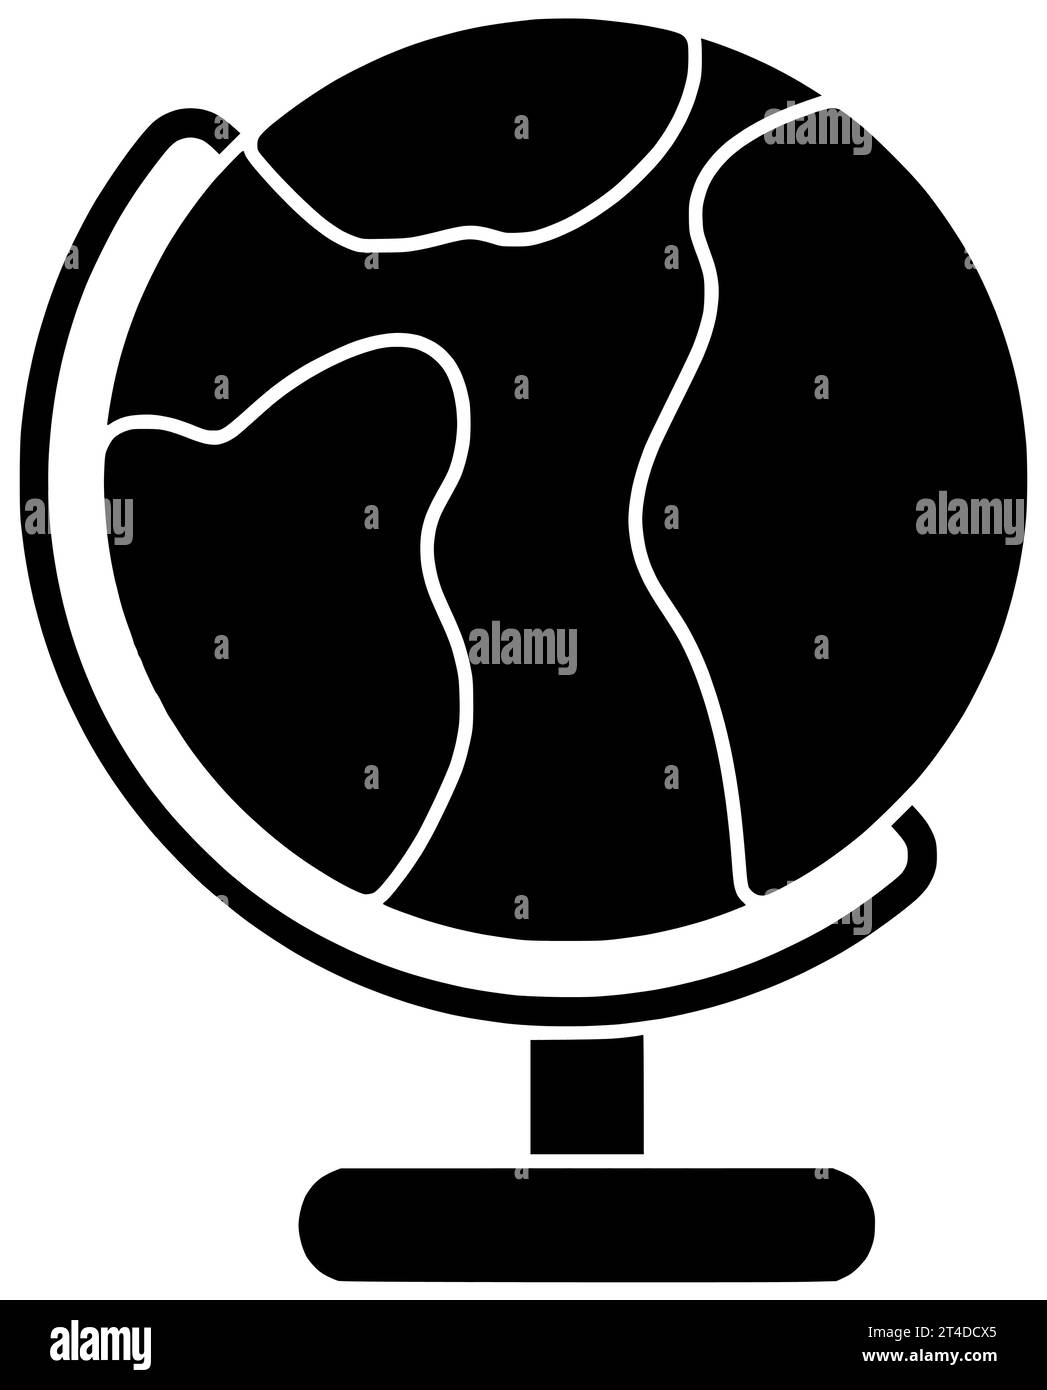 Geologie schwarzer Kompass Silhouette Kartographie Illustration Karte Icon Geographie Logo Lage Land Richtung Topographie Reise Globus Erde Welt Kontinent Wissenschaft Stockfoto